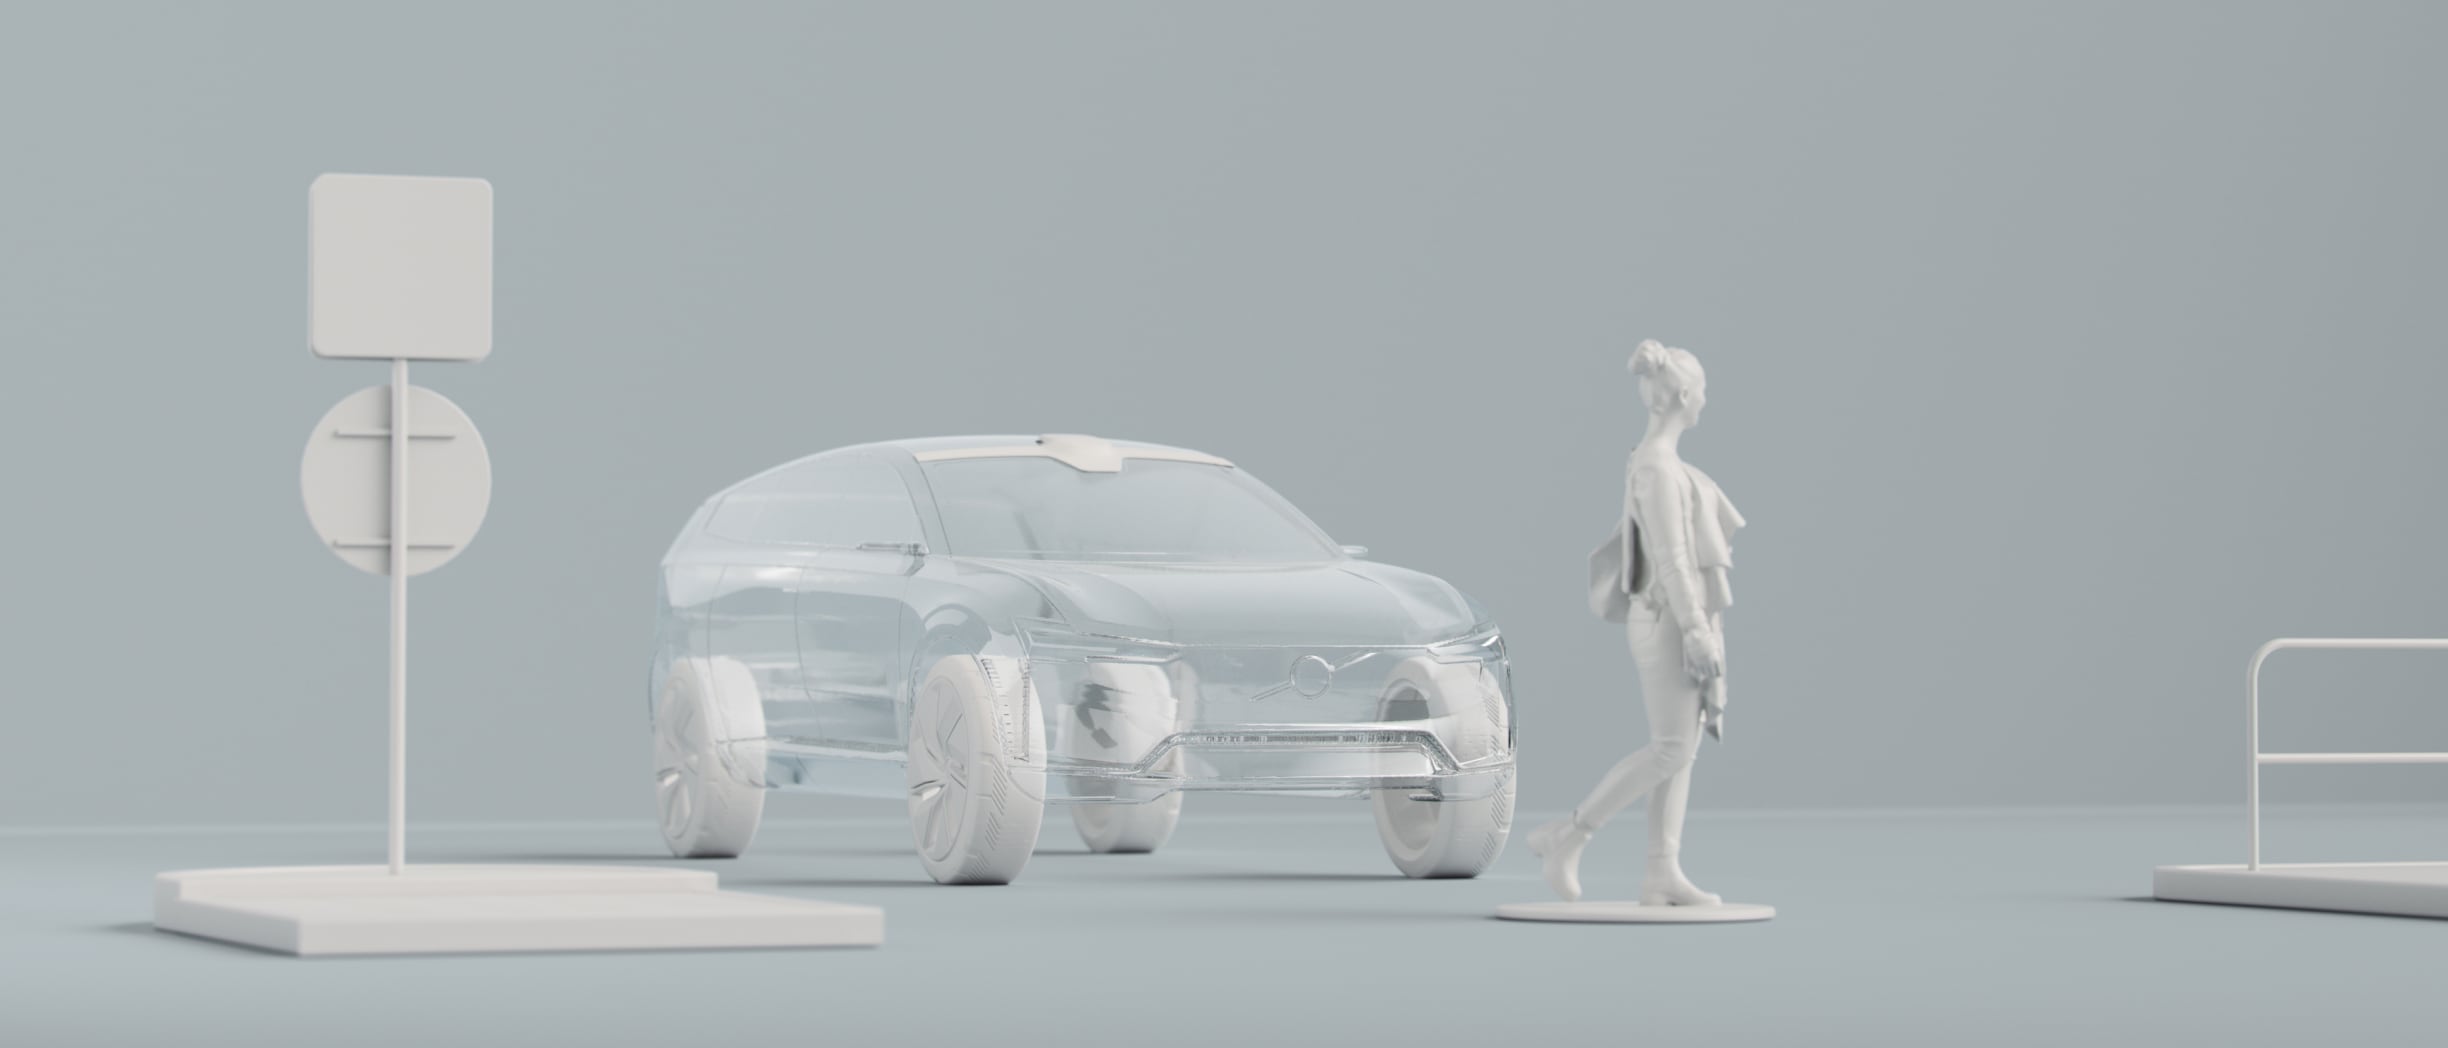 汽车轮廓、人形和其他物体数字渲染效果。